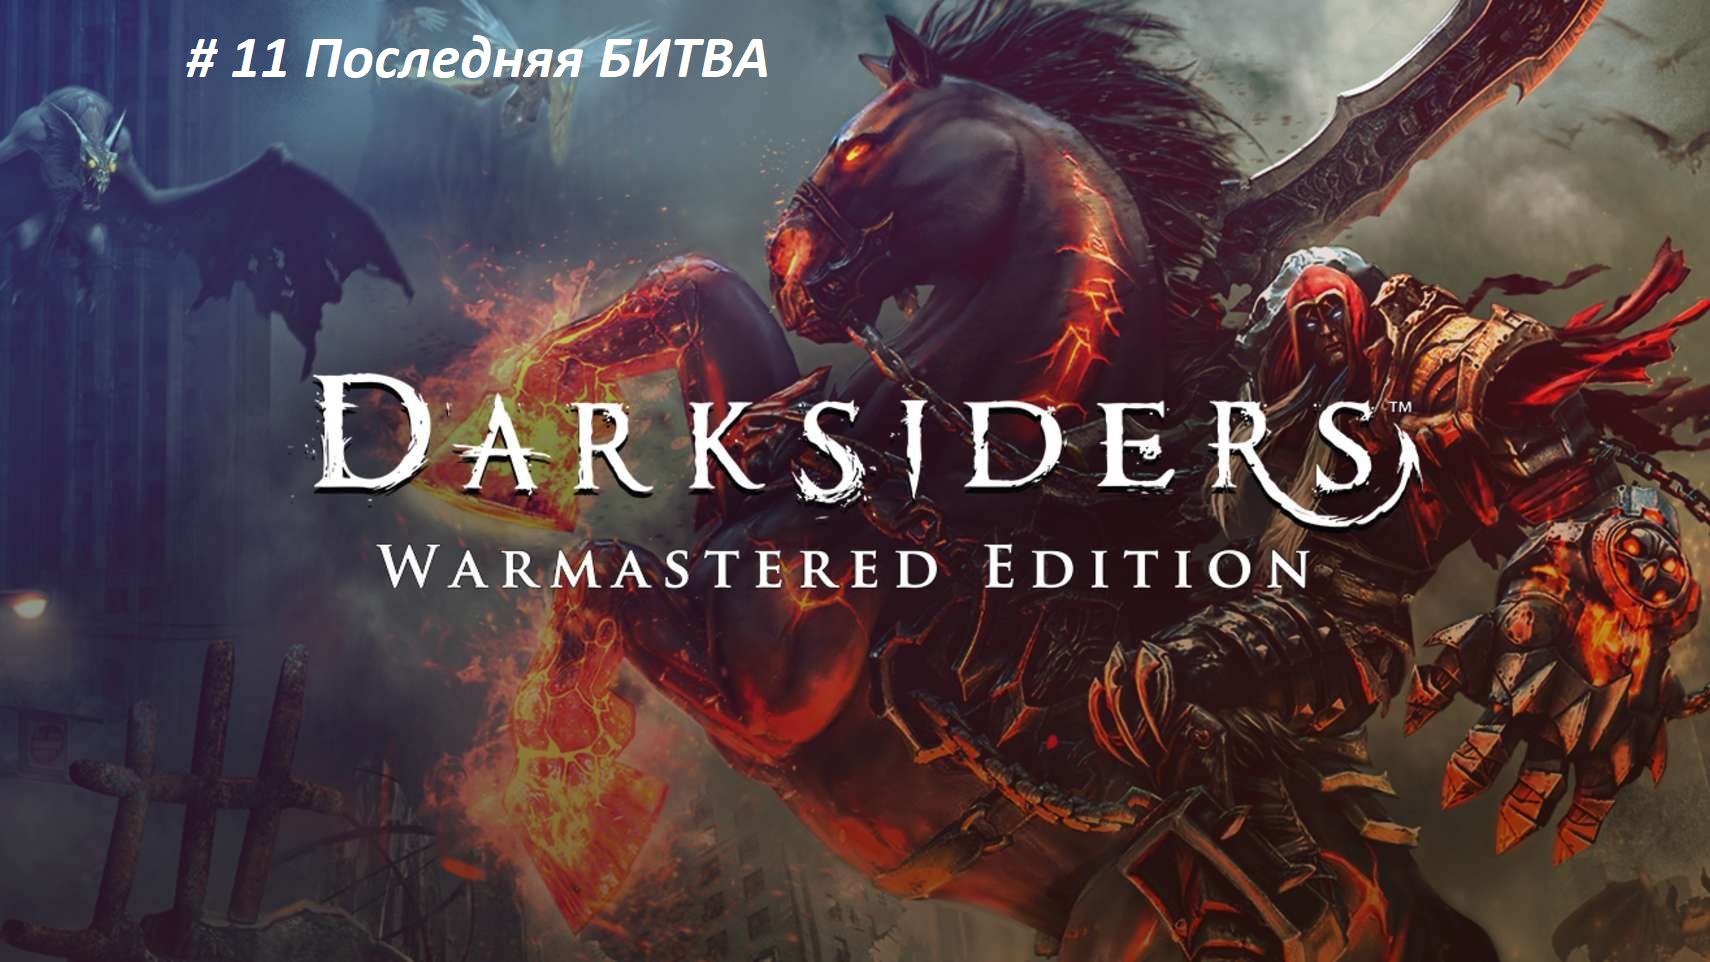 Darksiders warmastered edition PC. Часть - 11 . Русская озвучка. Финальная битва с Разрушителем.